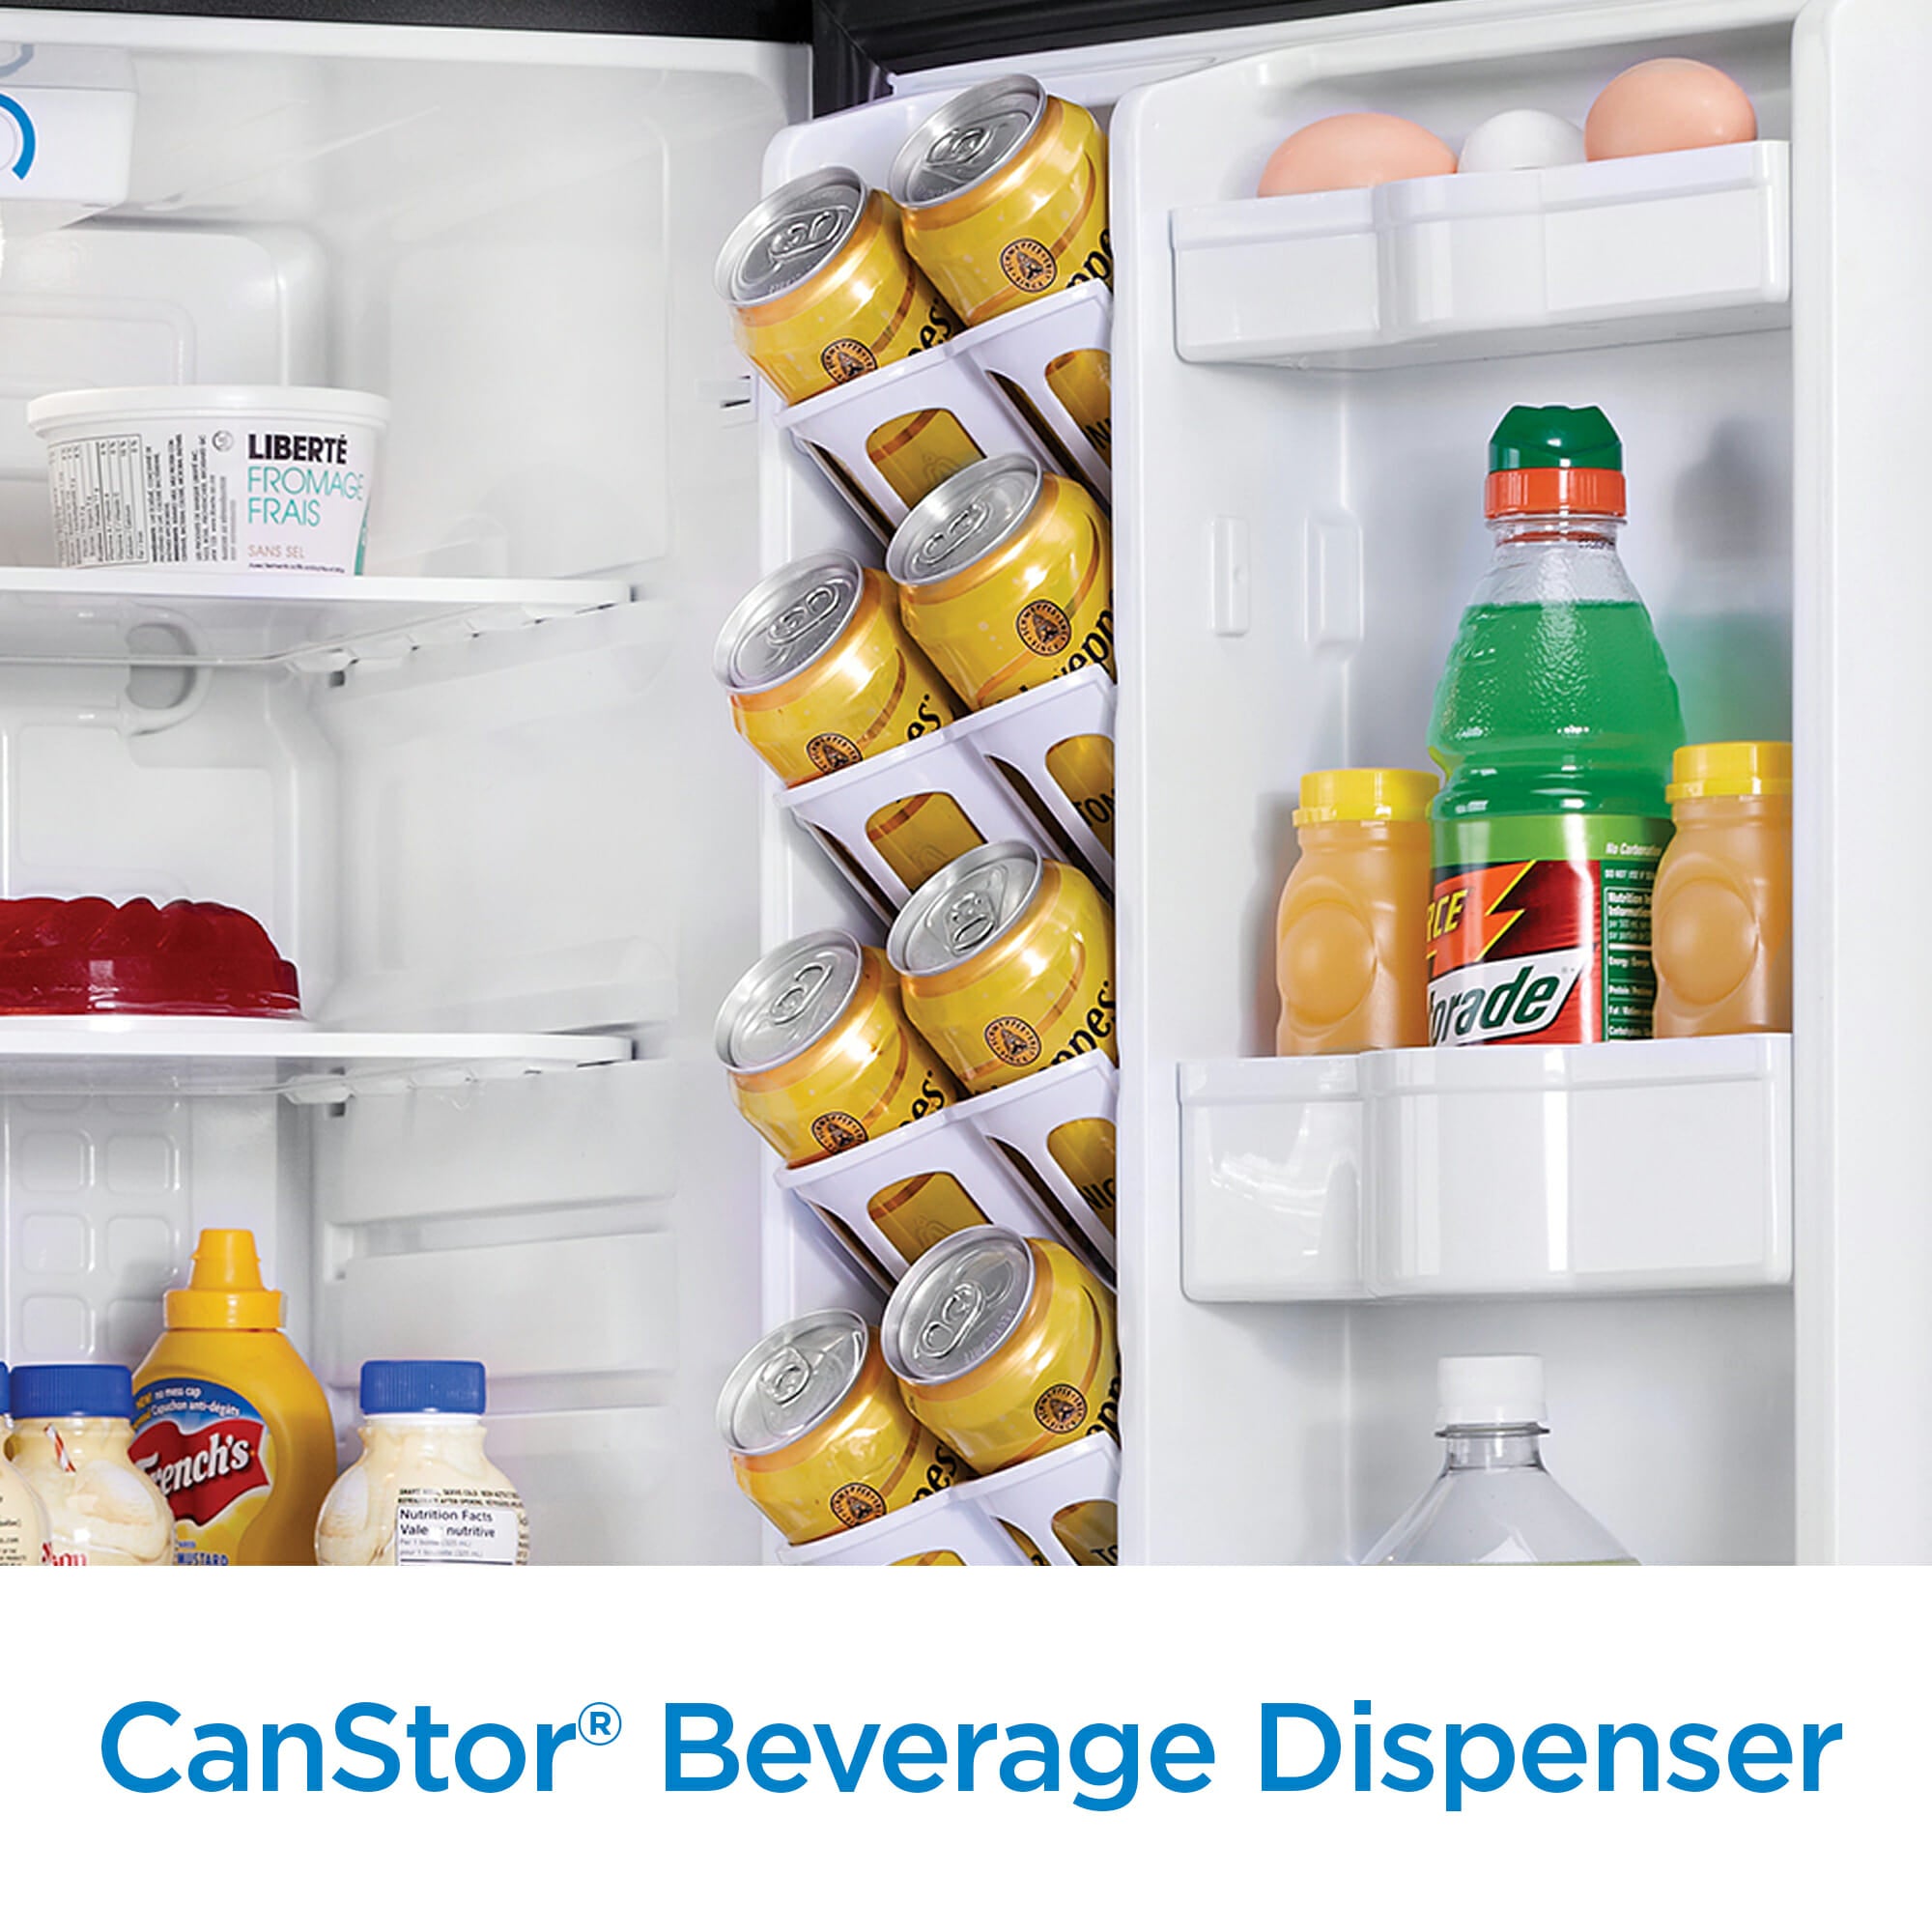 Danby - 4.4 CF All Refrigerator, Auto Defrost, Glass Cantilever Shelves, ESTAR Refrigerators - DAR044A4BSLDD